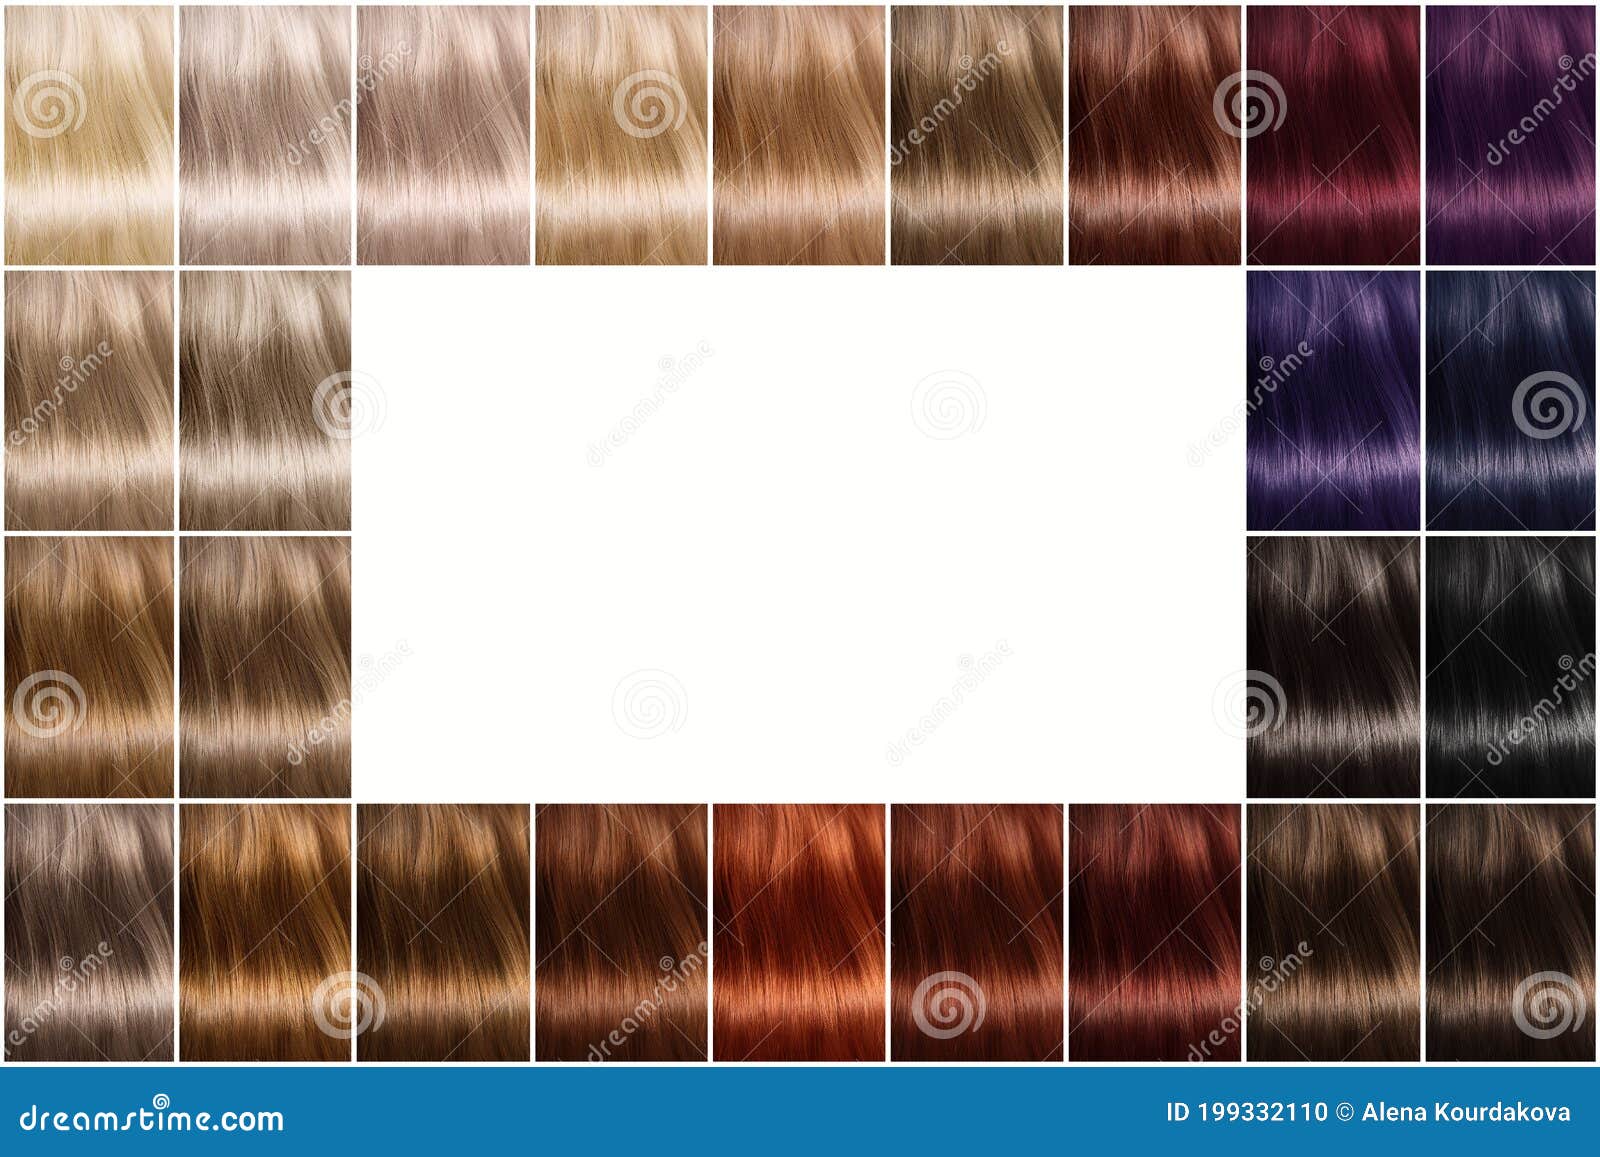 Kleurenpalet Van Haarkleurmiddelen Een Palet Haarkleuren Met Een Brede Selectie is Een Lege in Het Midden Stock Foto - Image kleuren, manier: 199332110